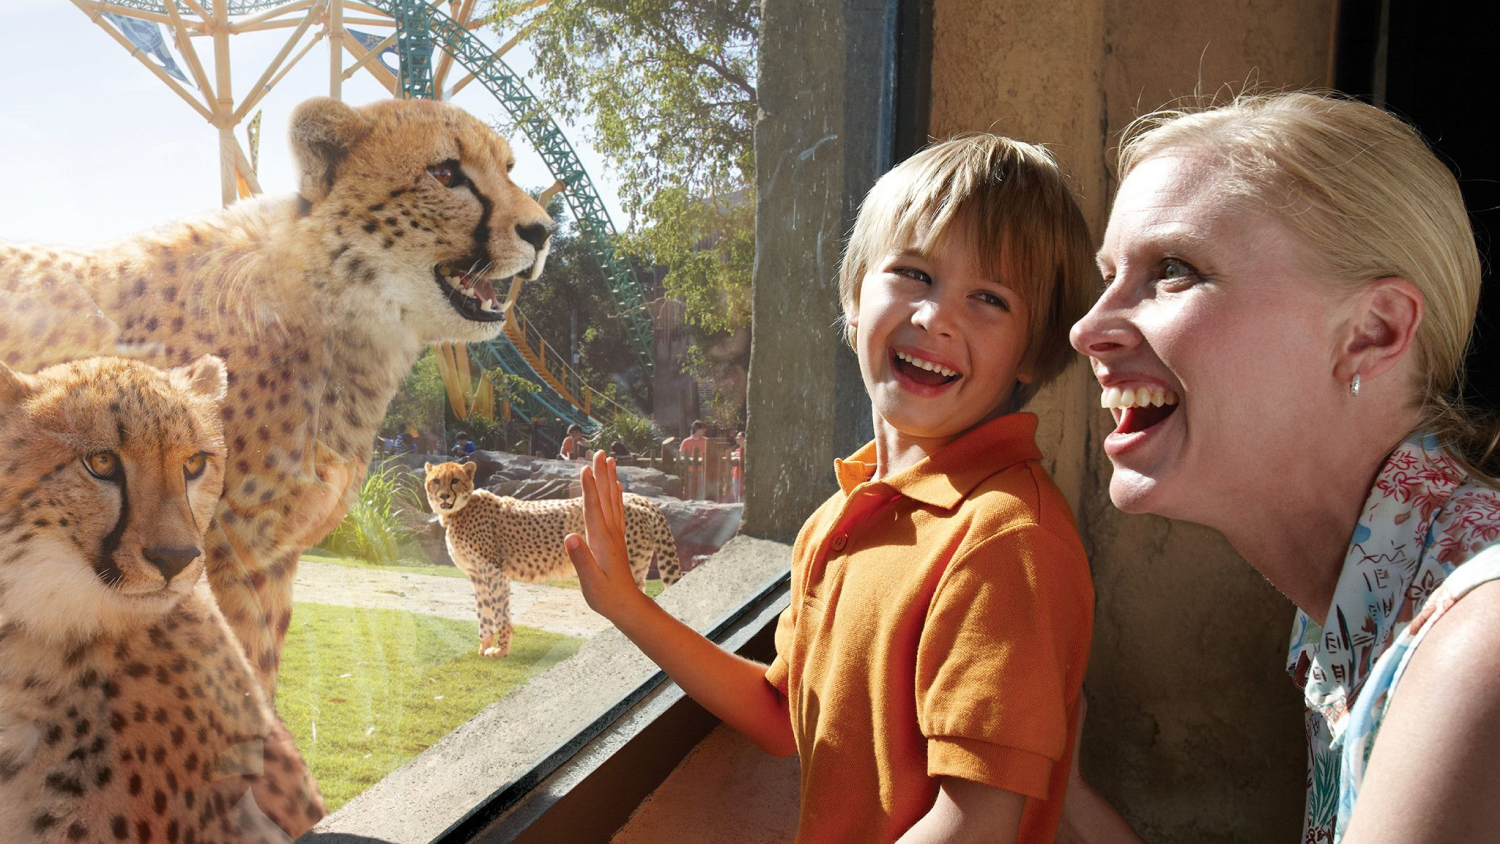 Woman and child looking at cheetahs